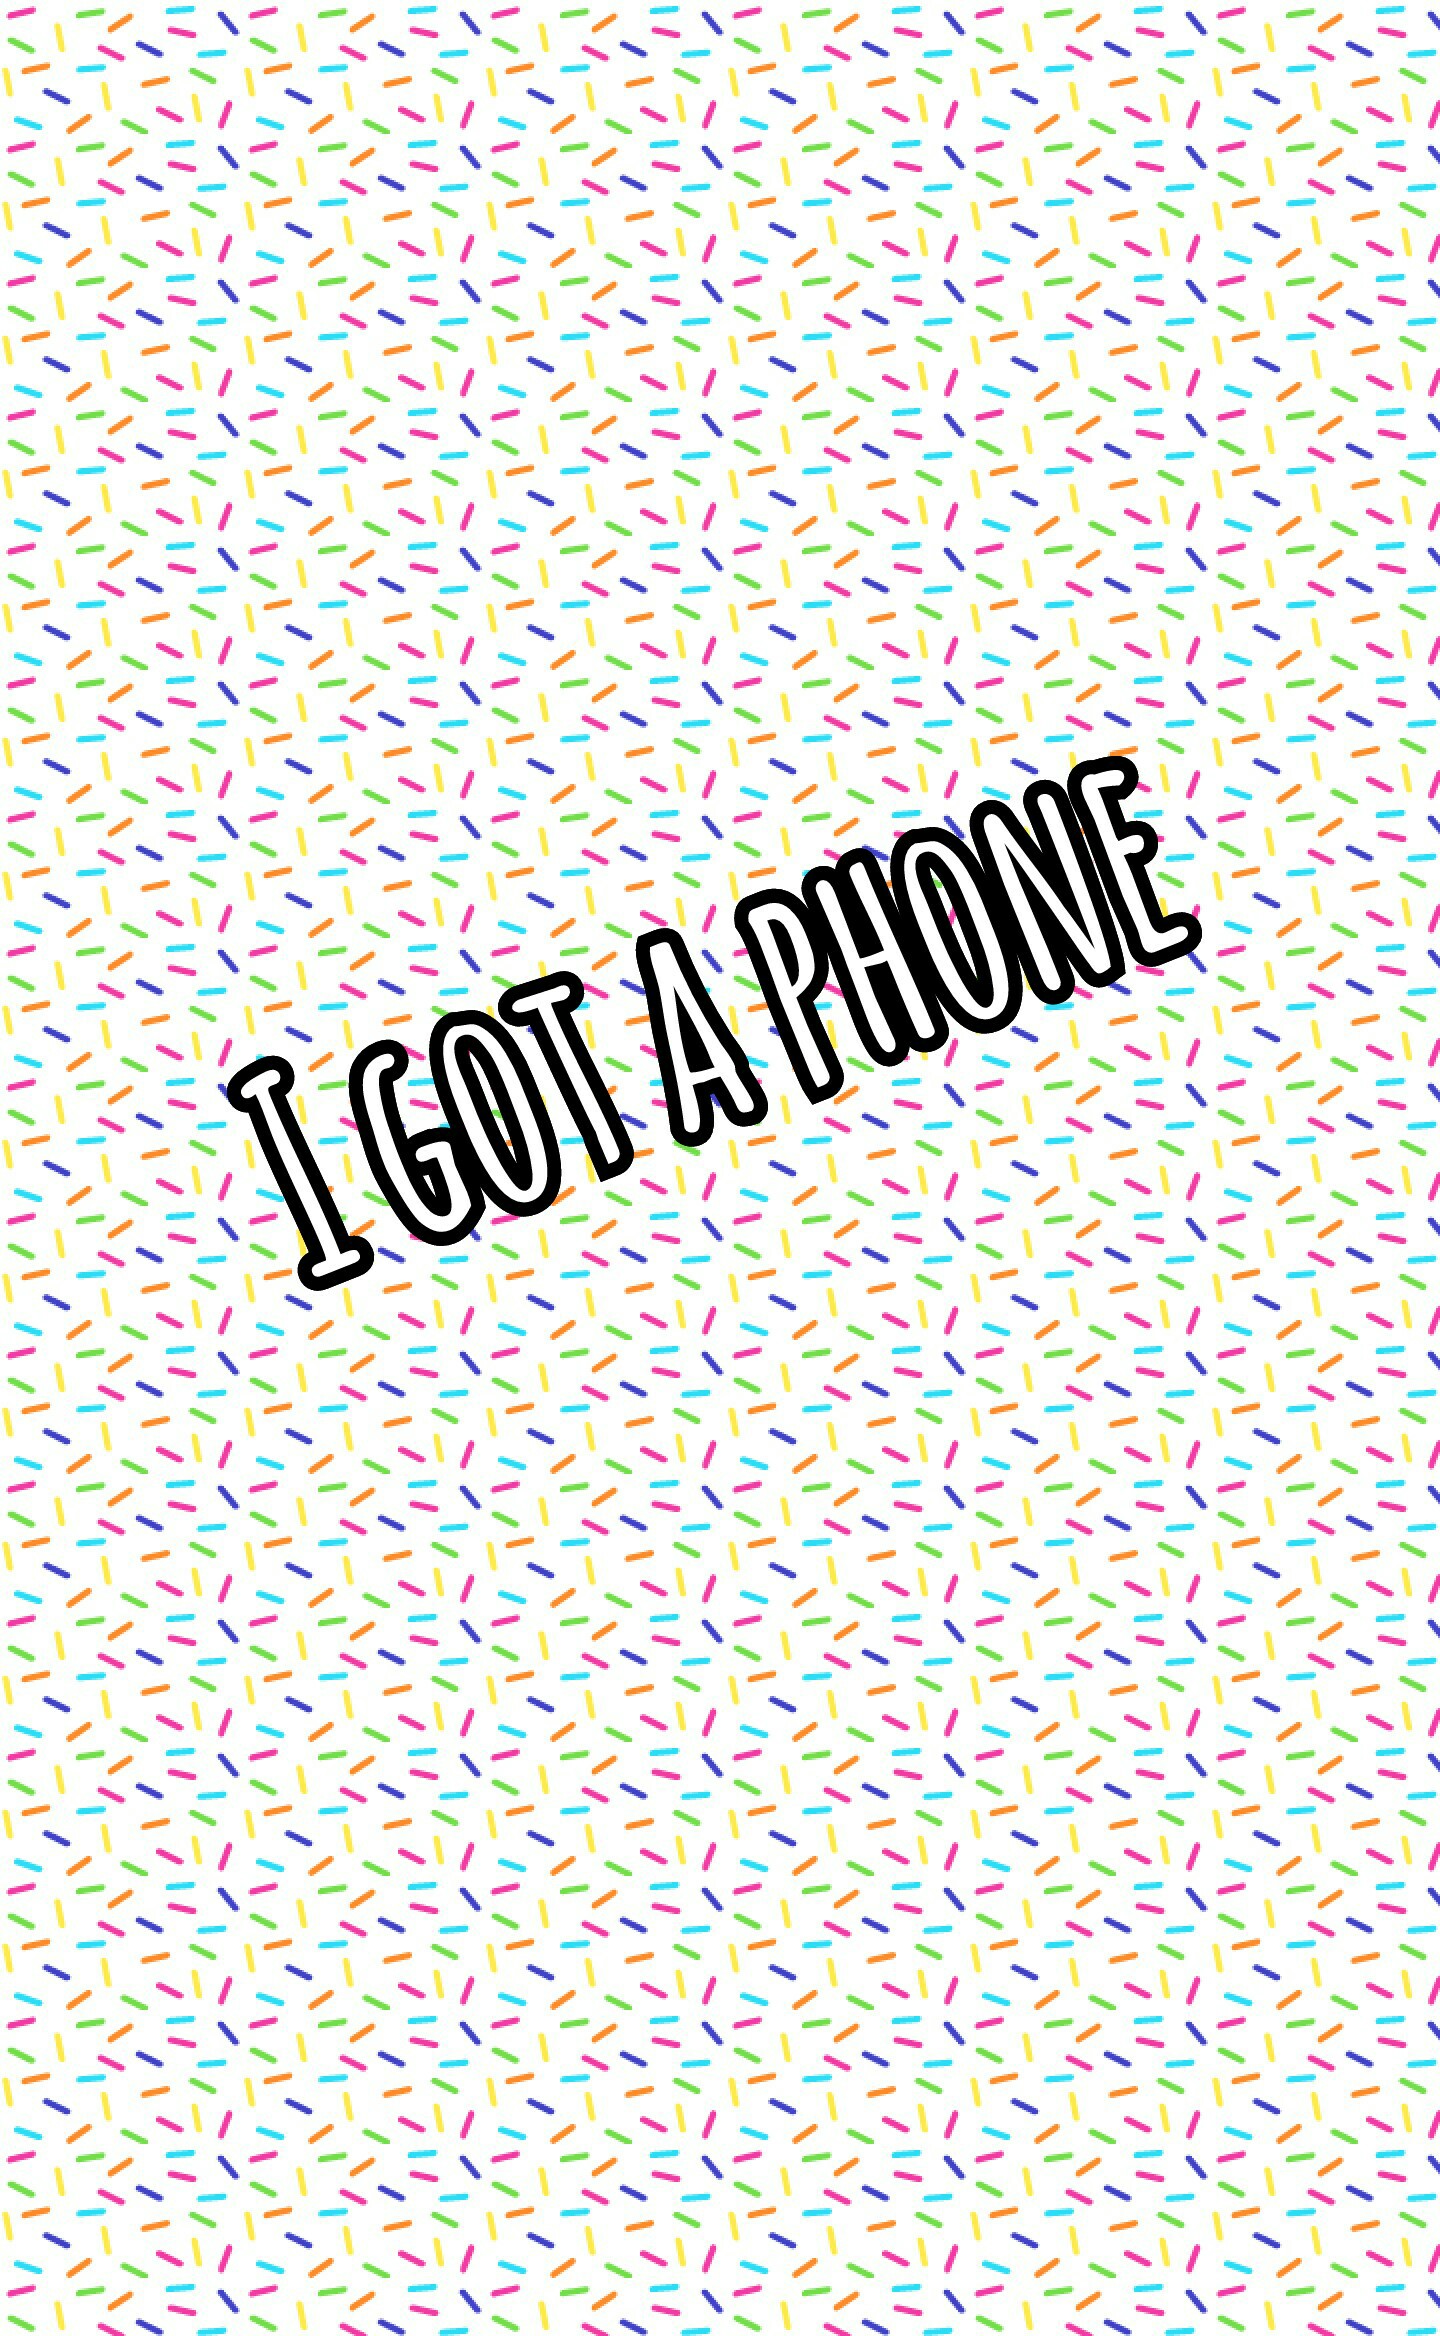 I got a phone